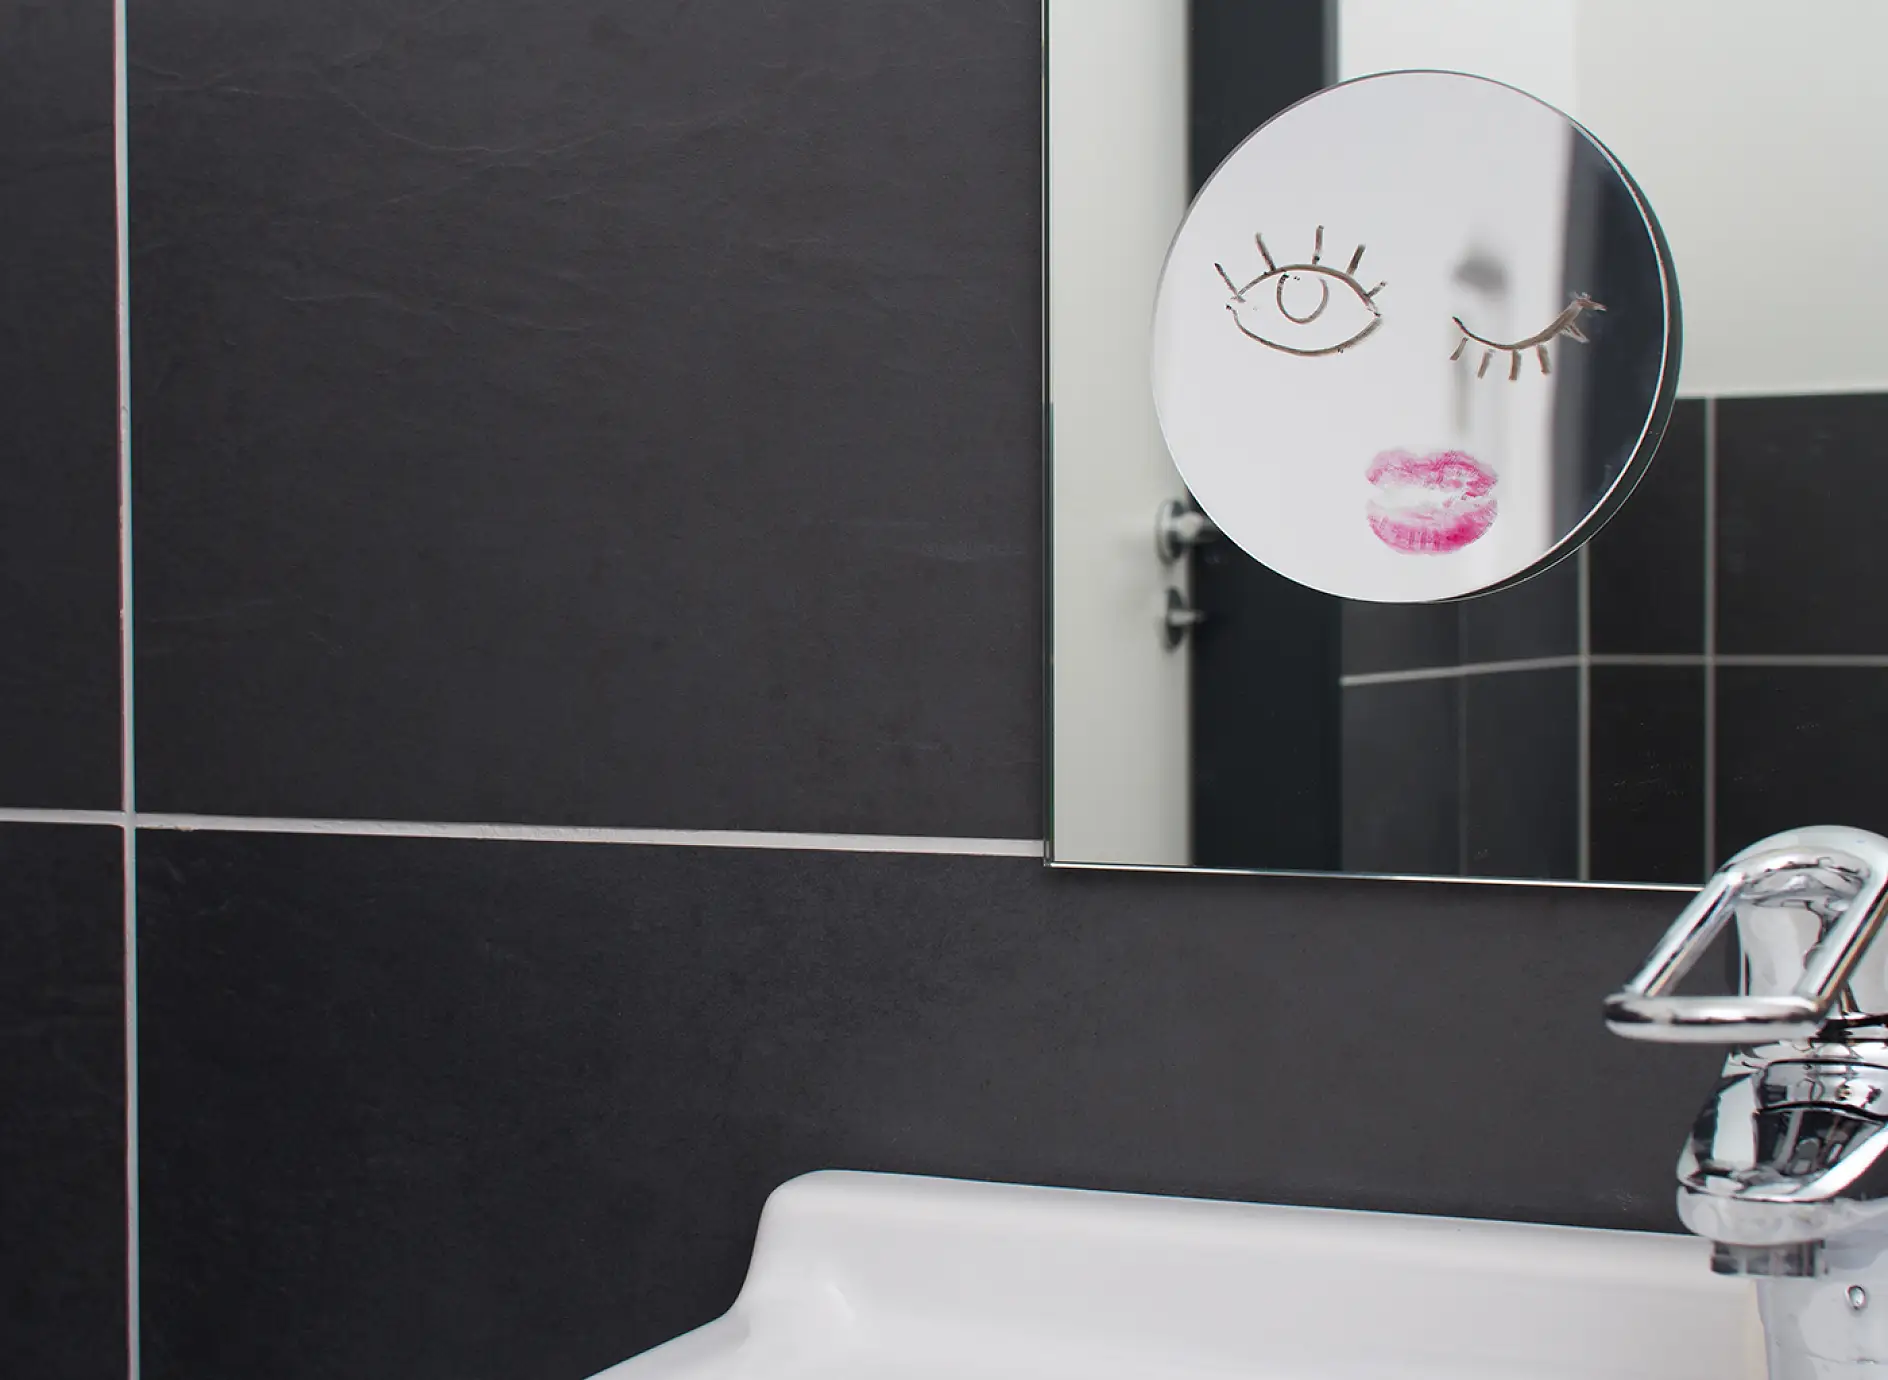 Ant sienos pakabintas vonios veidrodis, prie kurio priklijuotas mažesnis makiažo veidrodis.